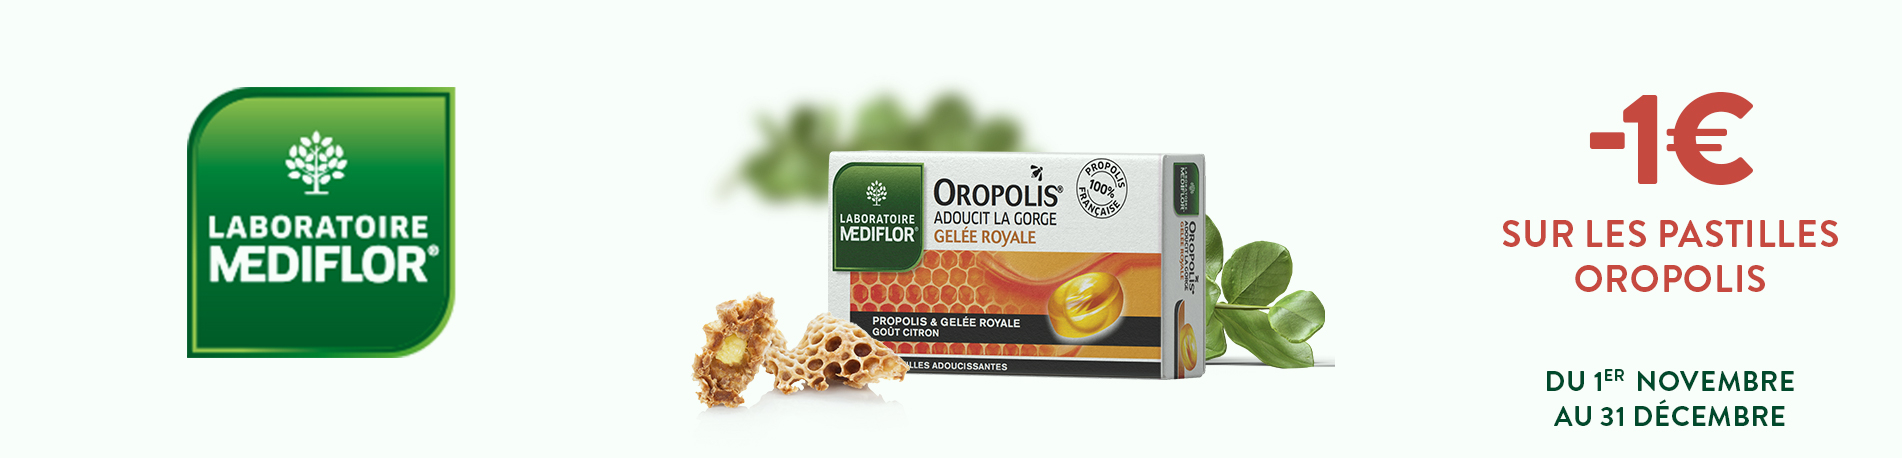 Promotion pastilles Oropolis